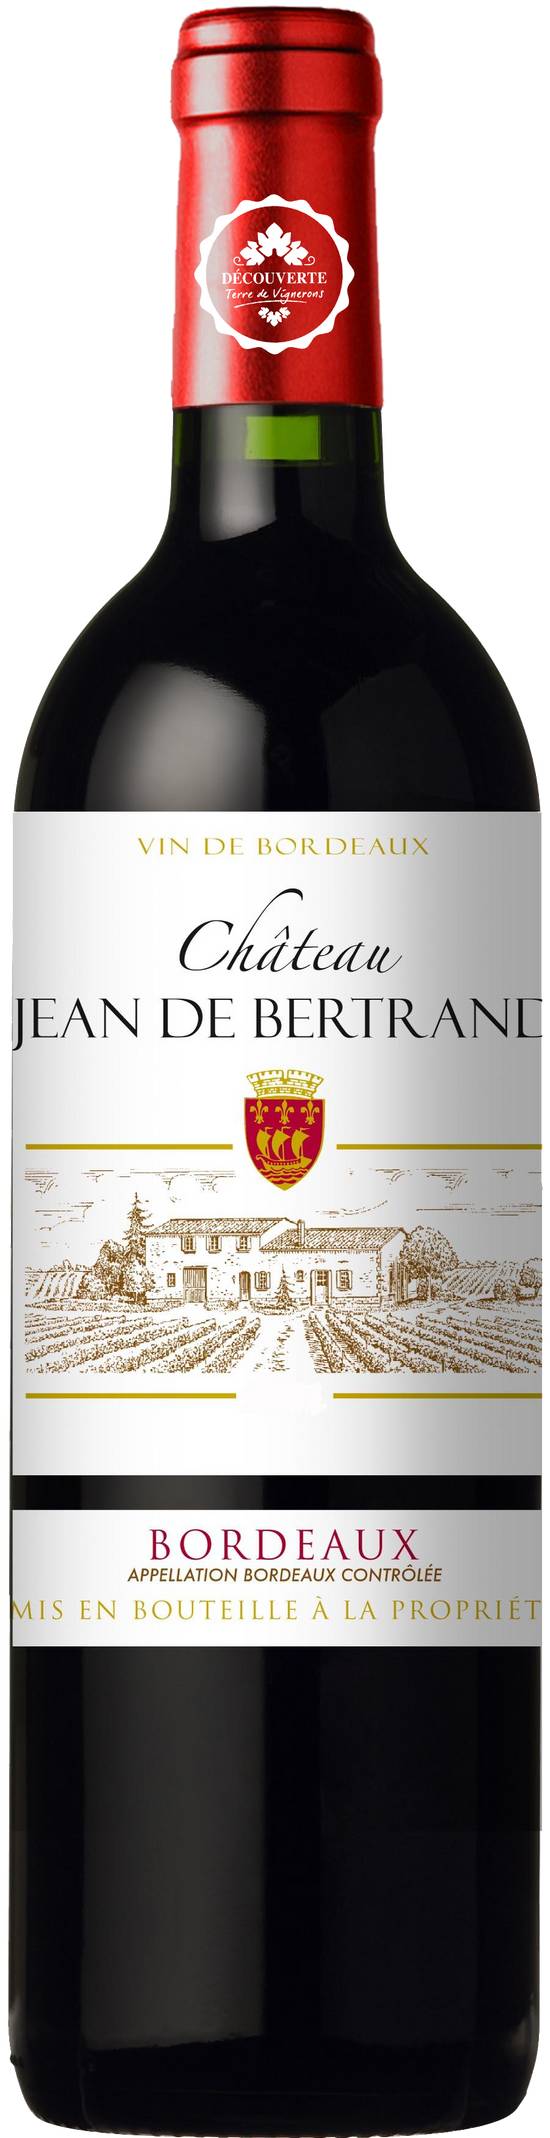 Château Jean de Bertrand - Vin rouge Bordeaux domestique (750 ml)